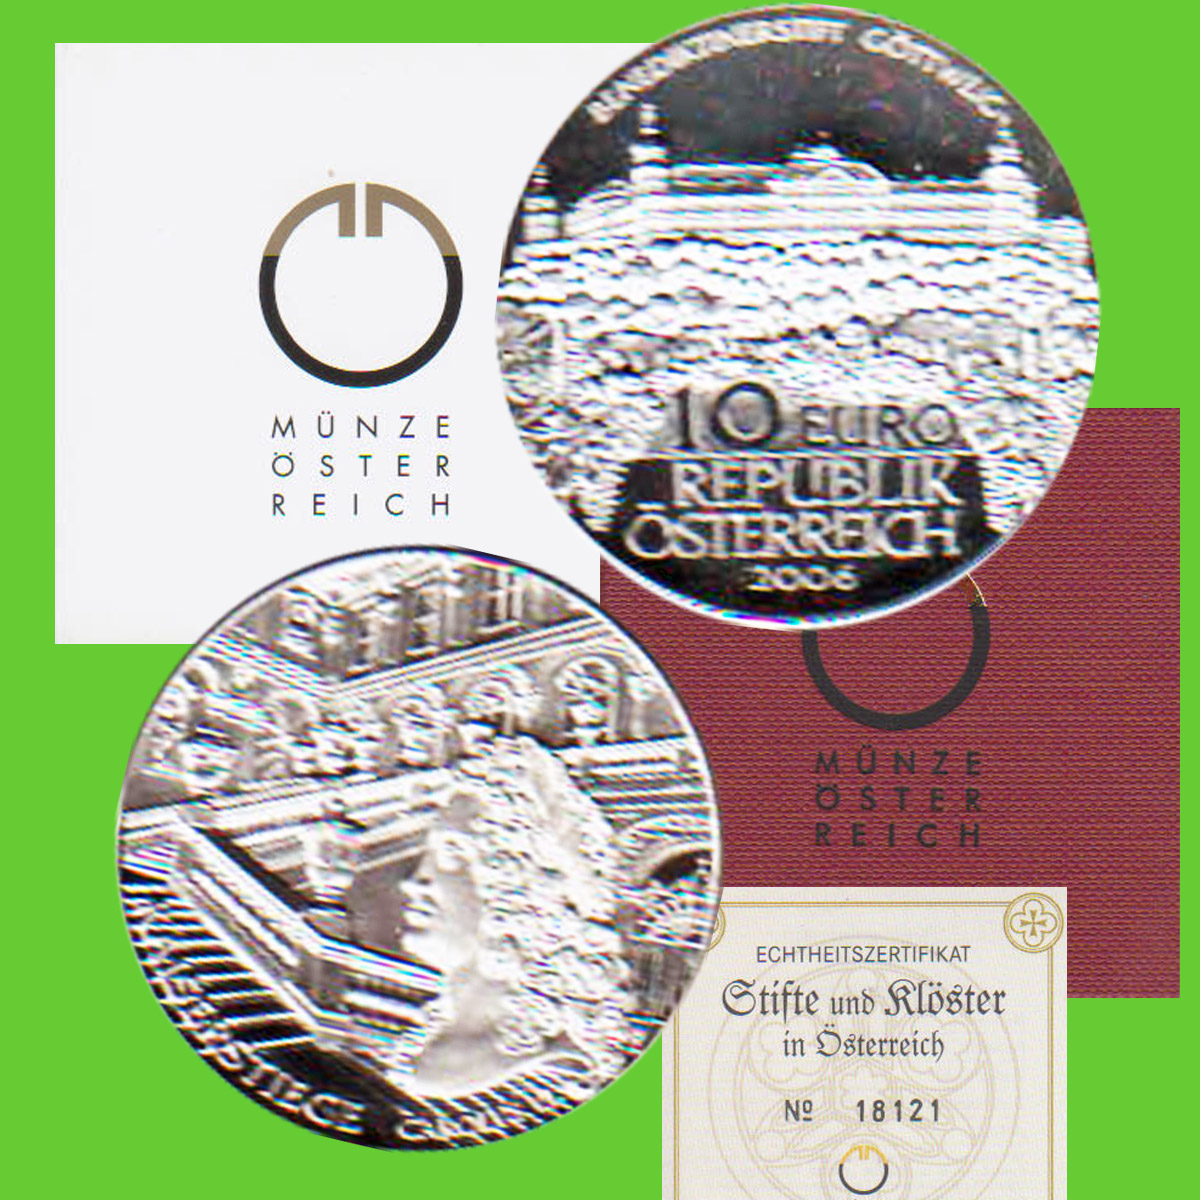  Offiz. 10-Euro-Silbermünze Österreich *Benediktinerstift Göttweig* 2006 *PP* max 60.000St!   